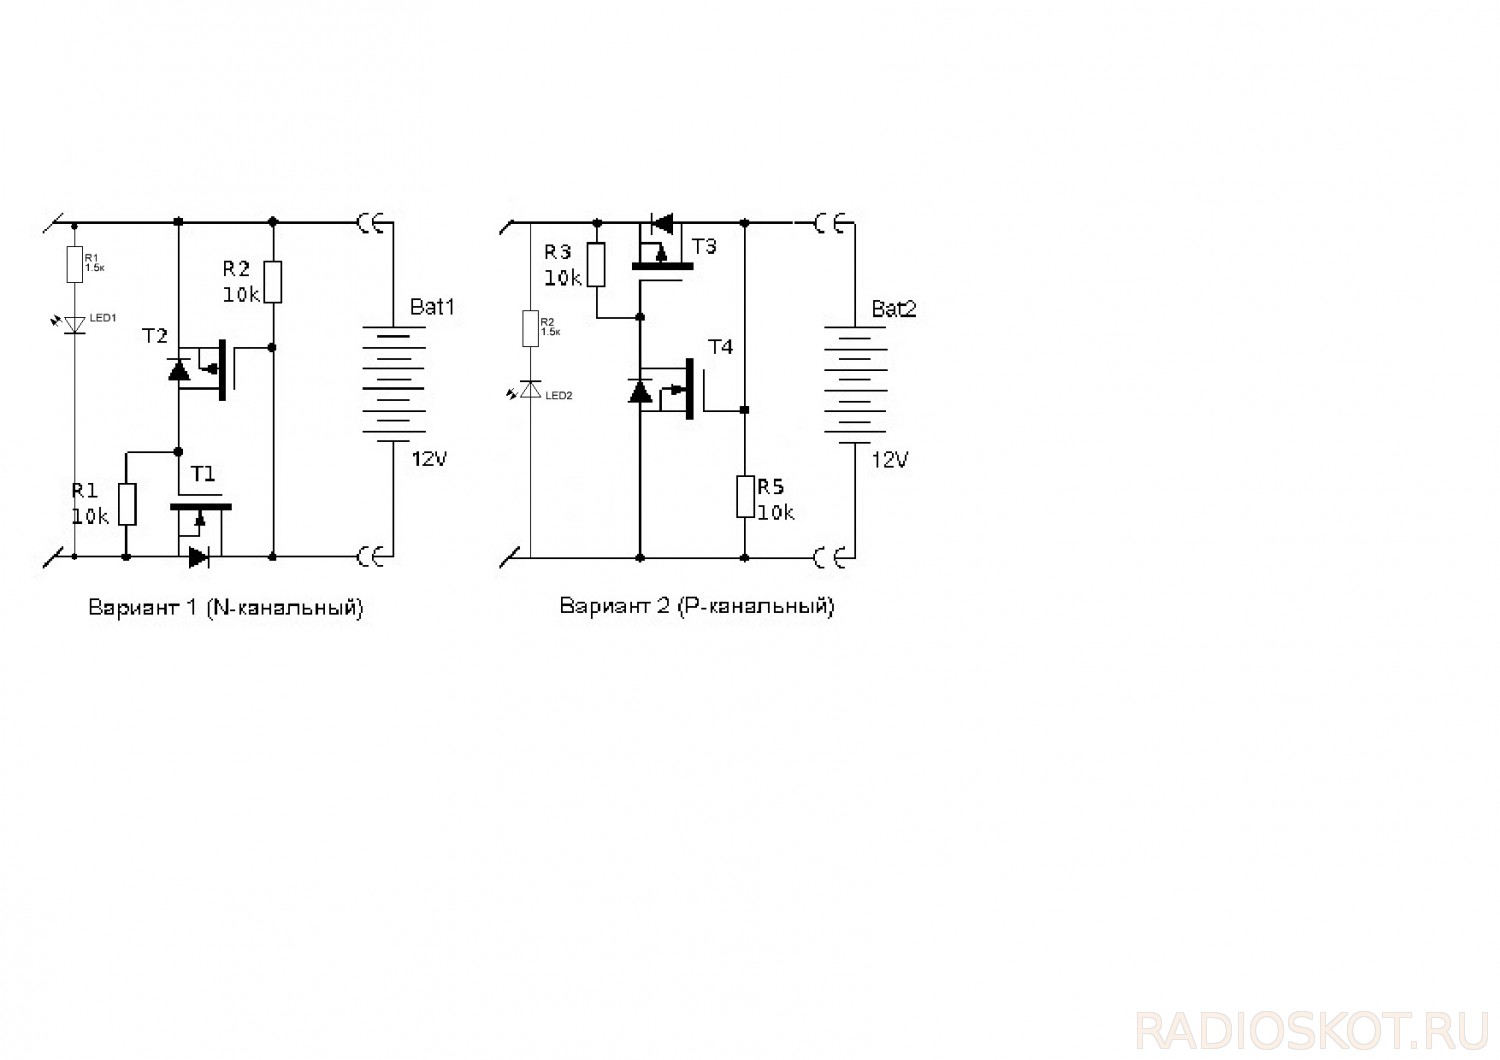 Зарядное переполюсовка. Схема защиты от переполюсовки на полевом транзисторе. Схема защиты от короткого замыкания на полевом транзисторе. Схема защиты от переполюсовки для зарядного устройства. Схема зарядки АКБ на полевом транзисторе.